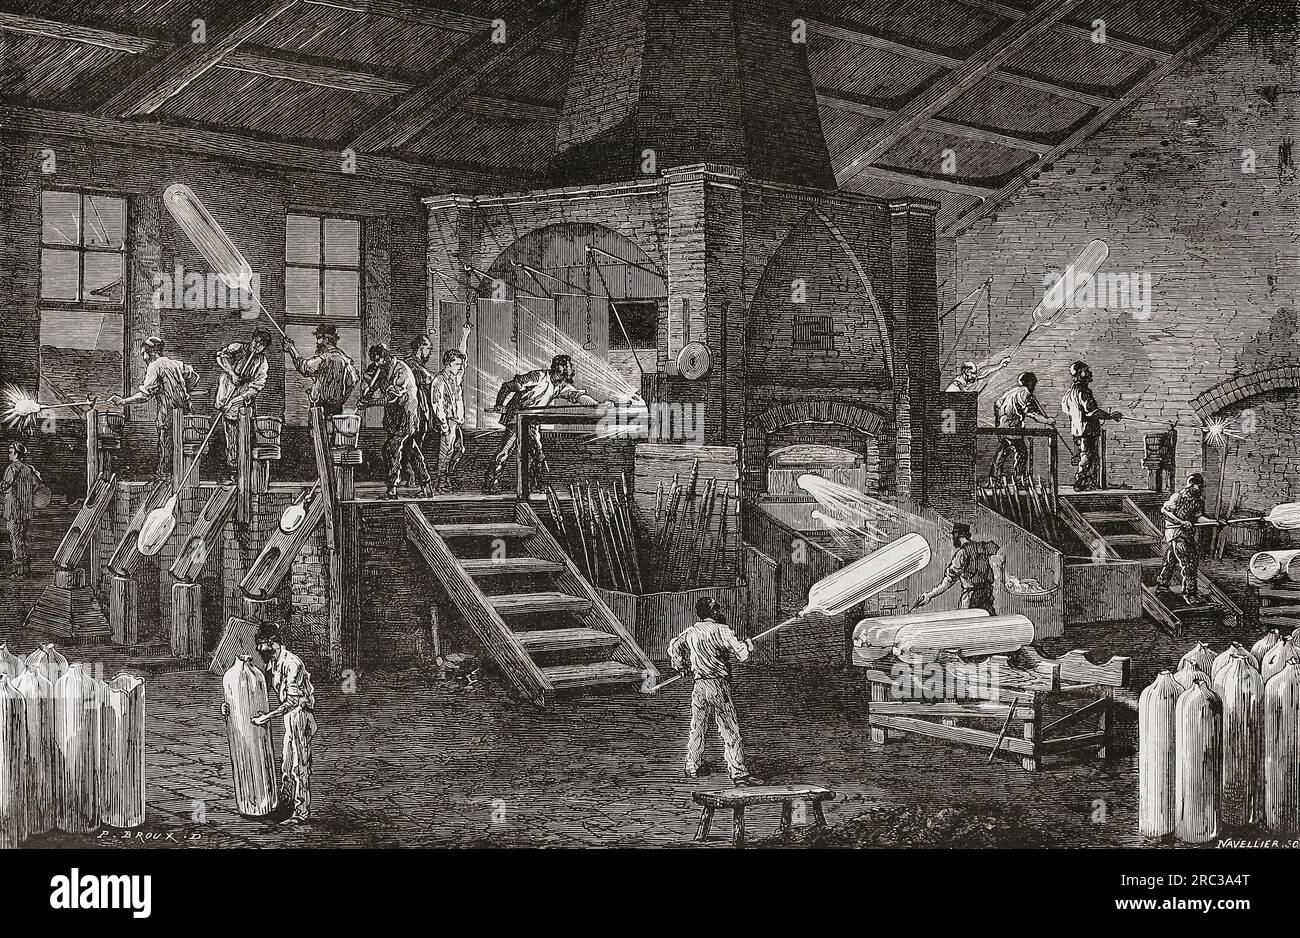 Glasfabrik aus dem 19. Jahrhundert, die Glaszylinder herstellt. Nach einer Illustration in Les merveilles de l'Industrie von Louis Figuier, veröffentlicht 1877. Stockfoto